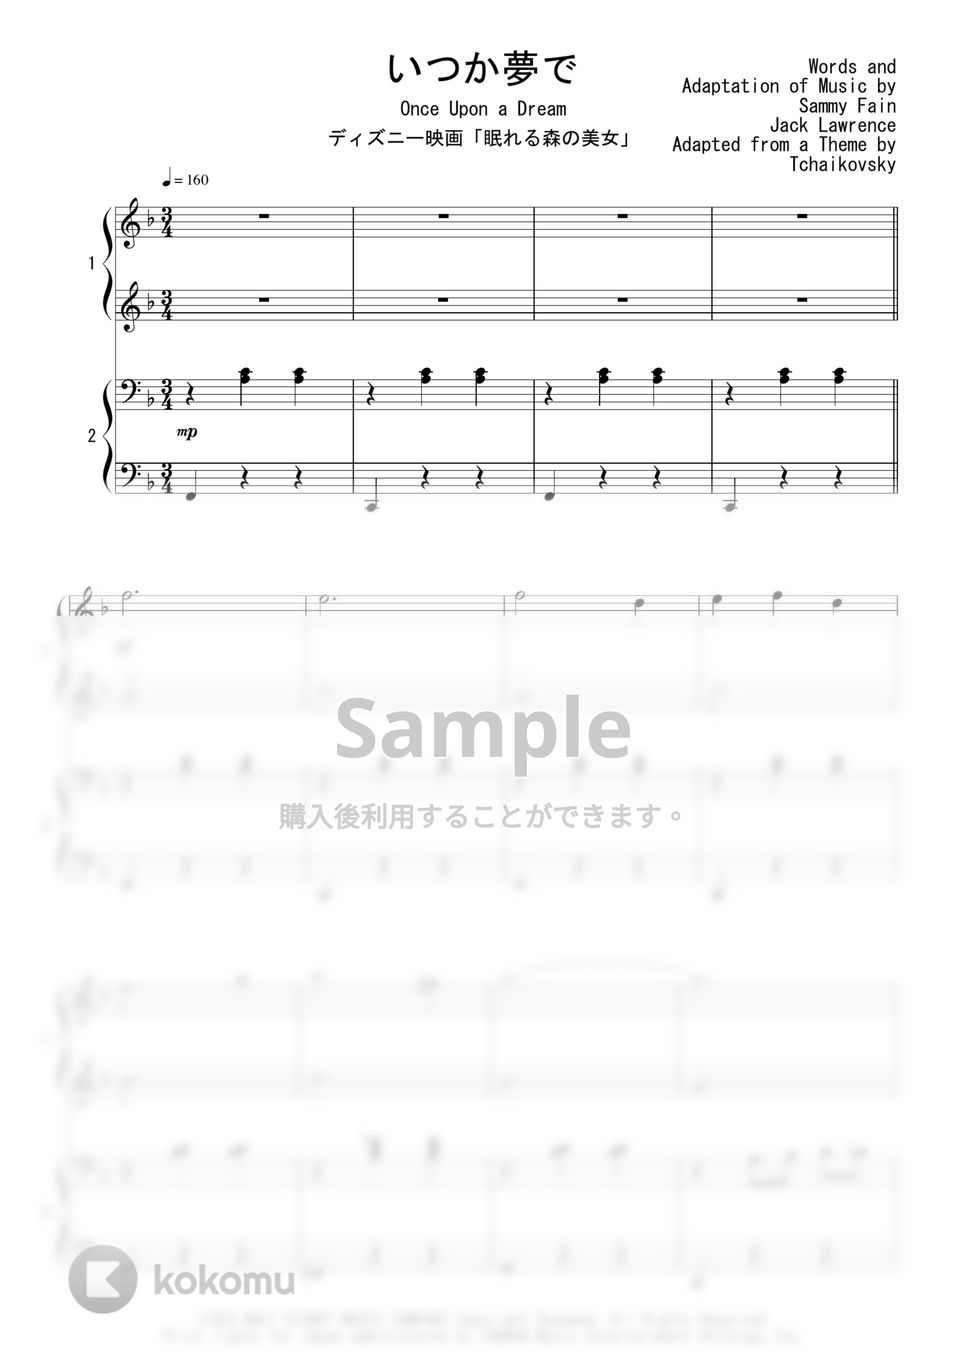 ディズニー映画「眠れる森の美女」 - いつか夢で (ピアノ連弾) by Peony